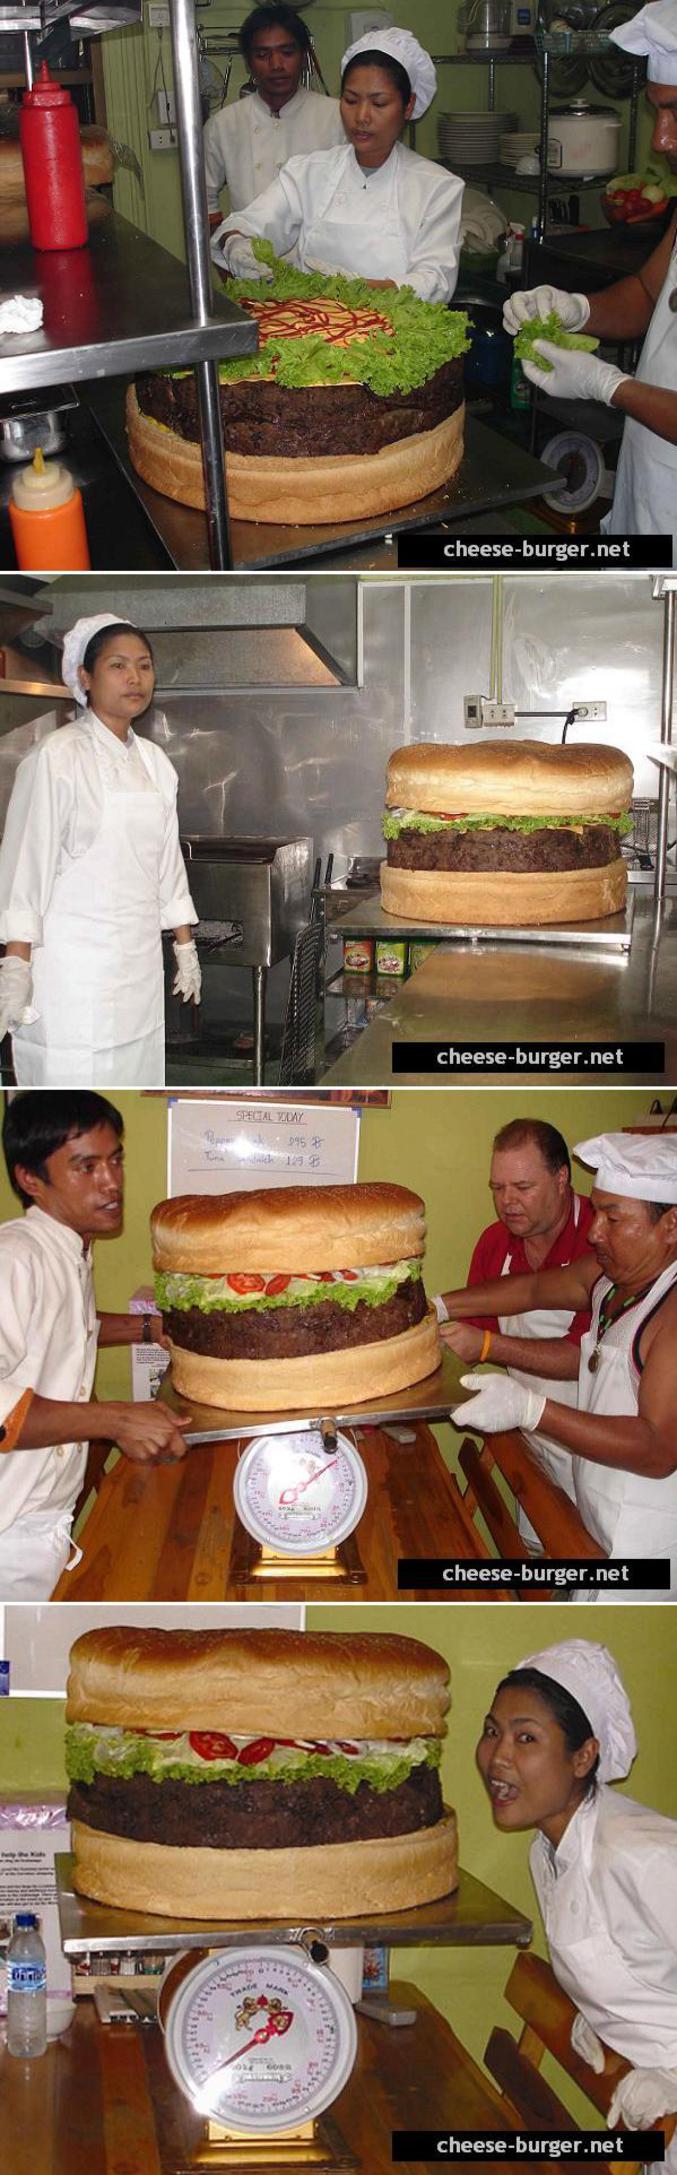 Le plus gros cheeseburger du monde réalisé en Thaïlande.